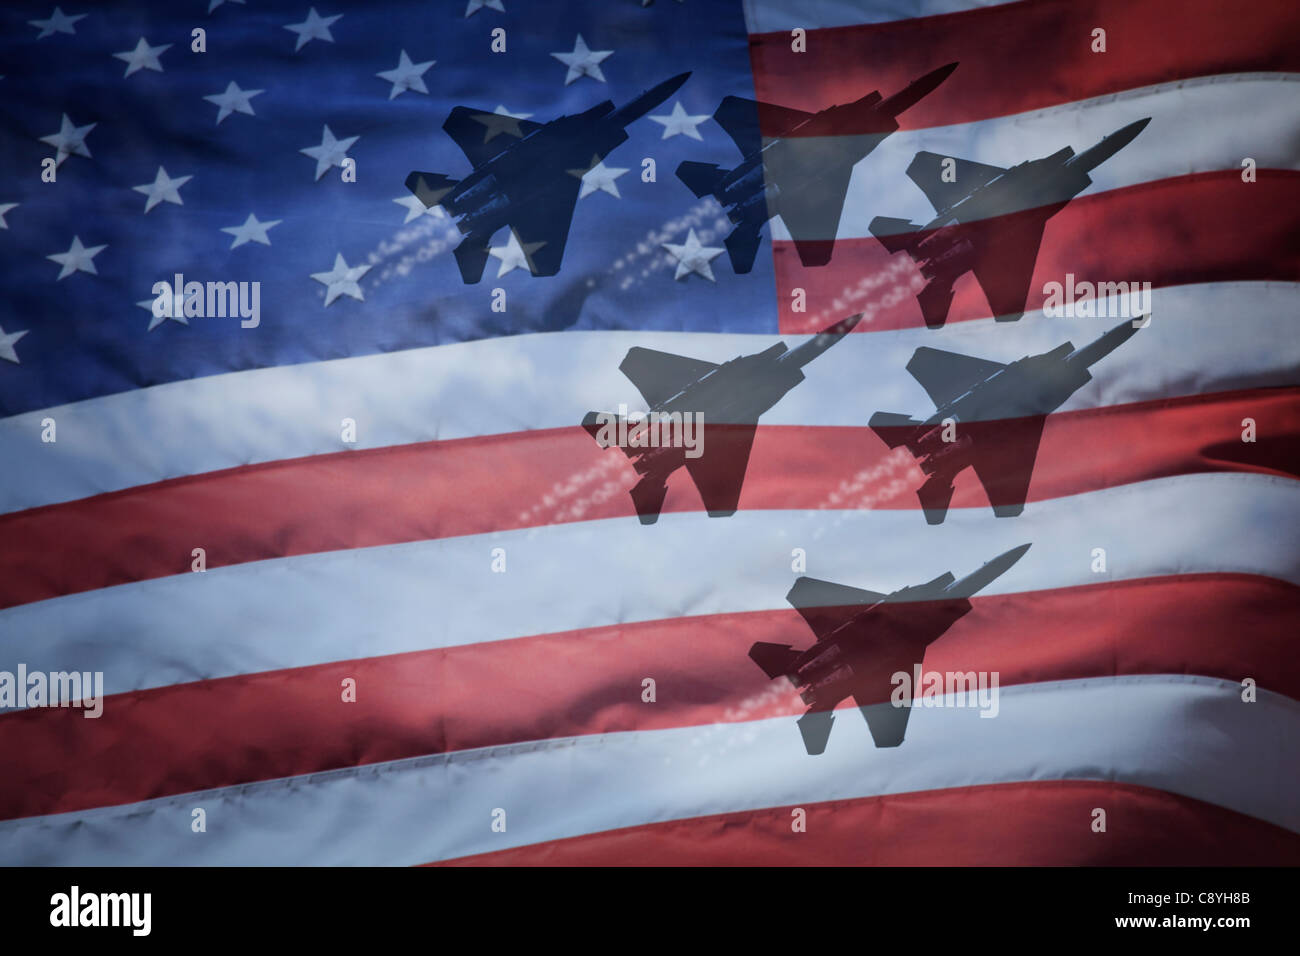 Close-up de bandera americana con siluetas de aviones F-16 Foto de stock